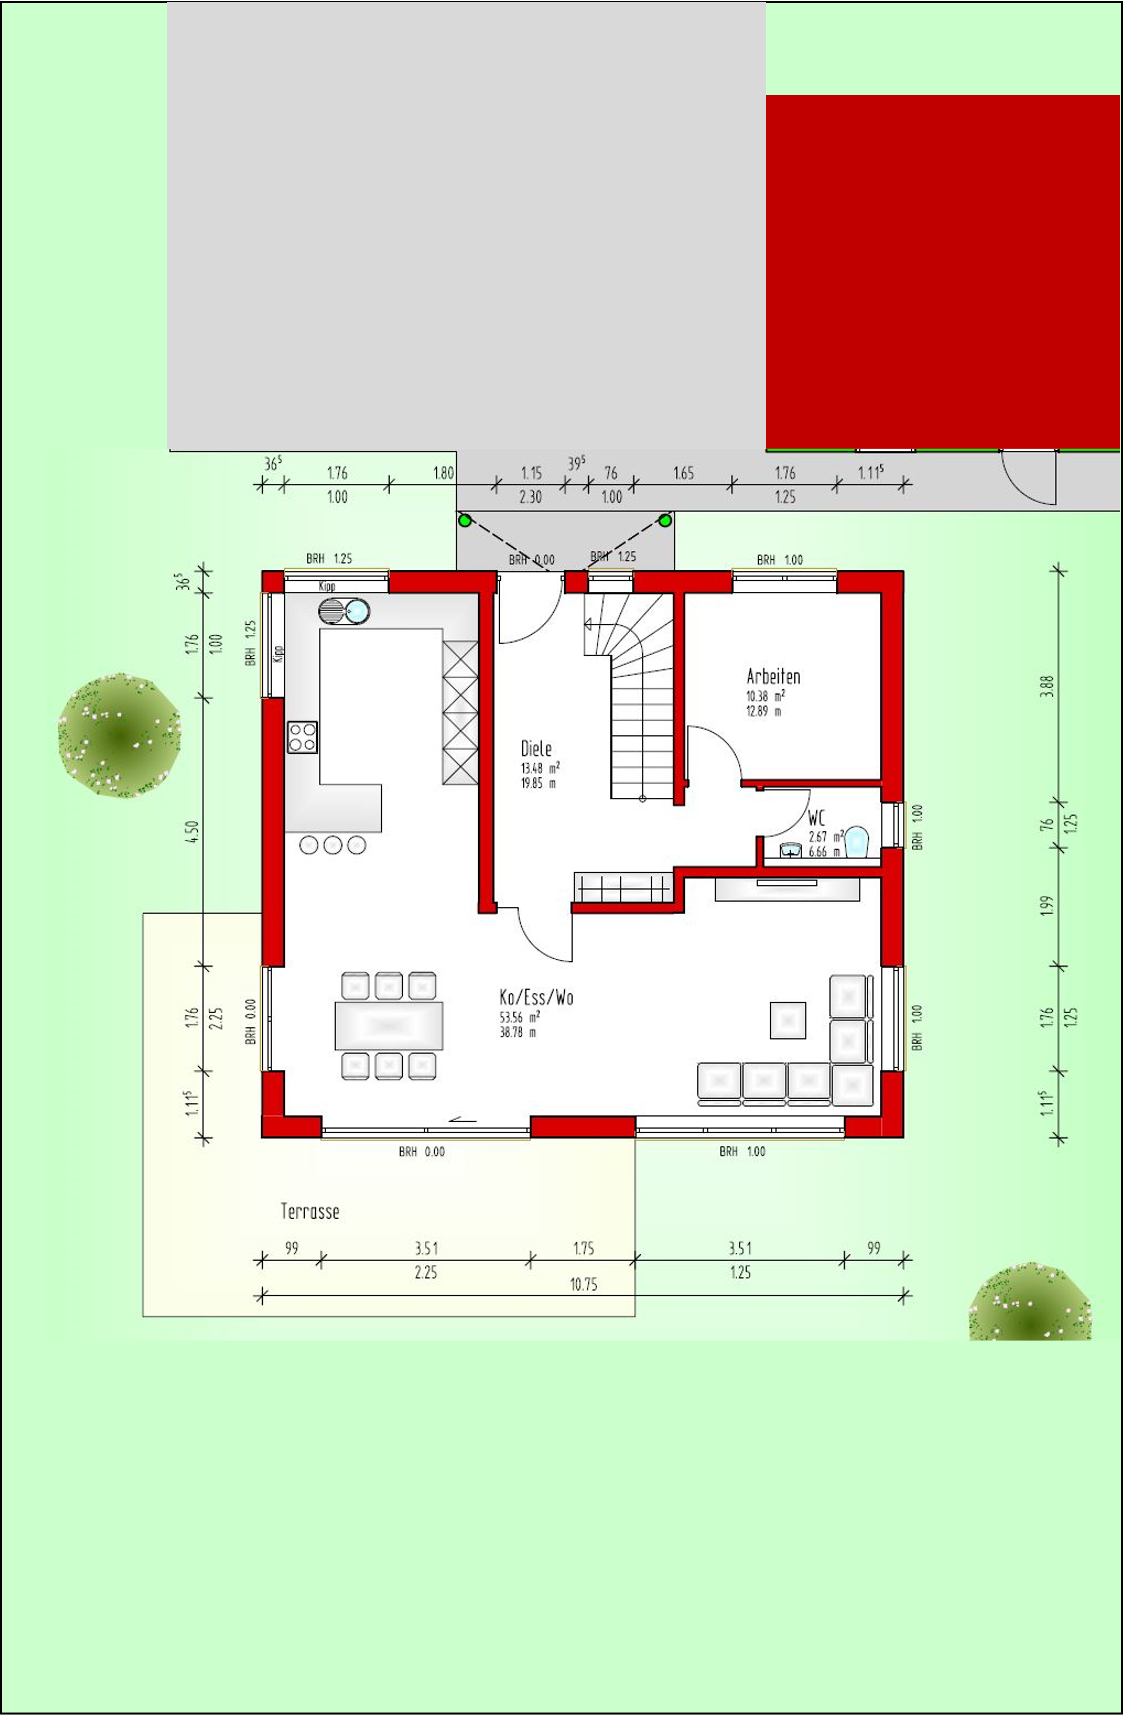 grundriss-planung-efh-2-vollgeschosse-stadtvilla-448346-1.png